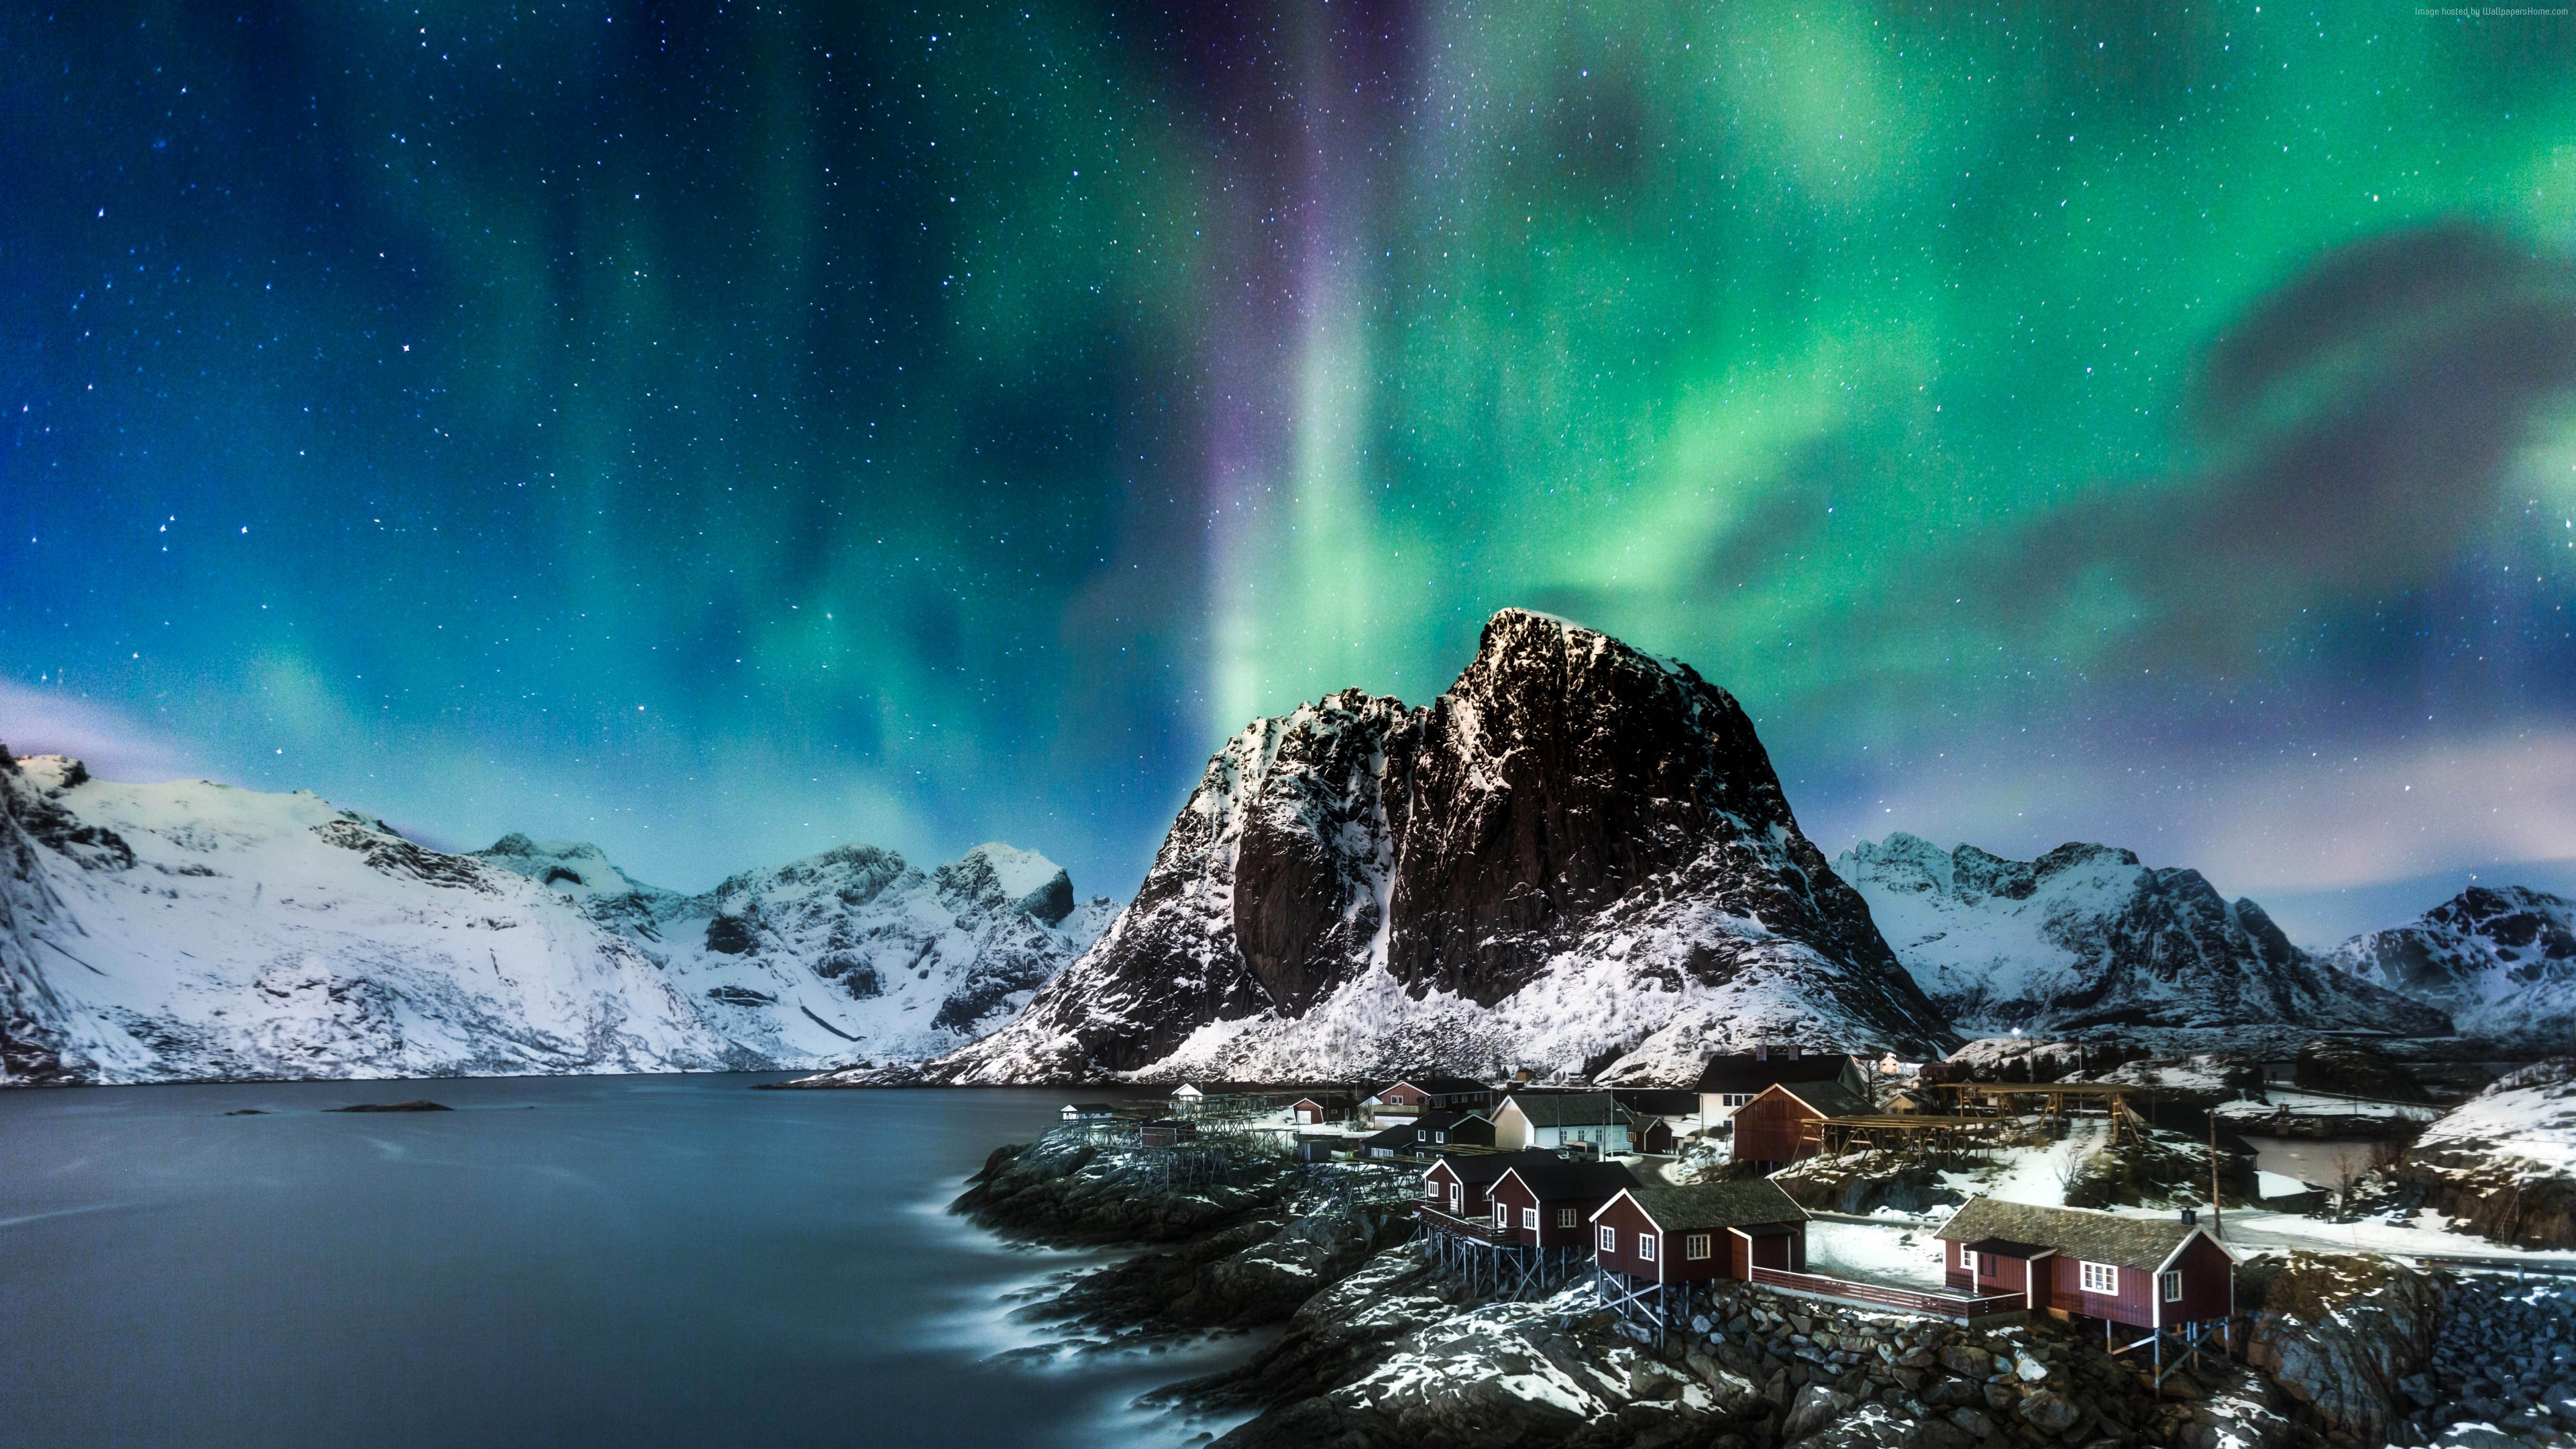 Wallpaper Norway, Lofoten islands, Europe, Mountains, sea, night, northern lights, 5k, Travel